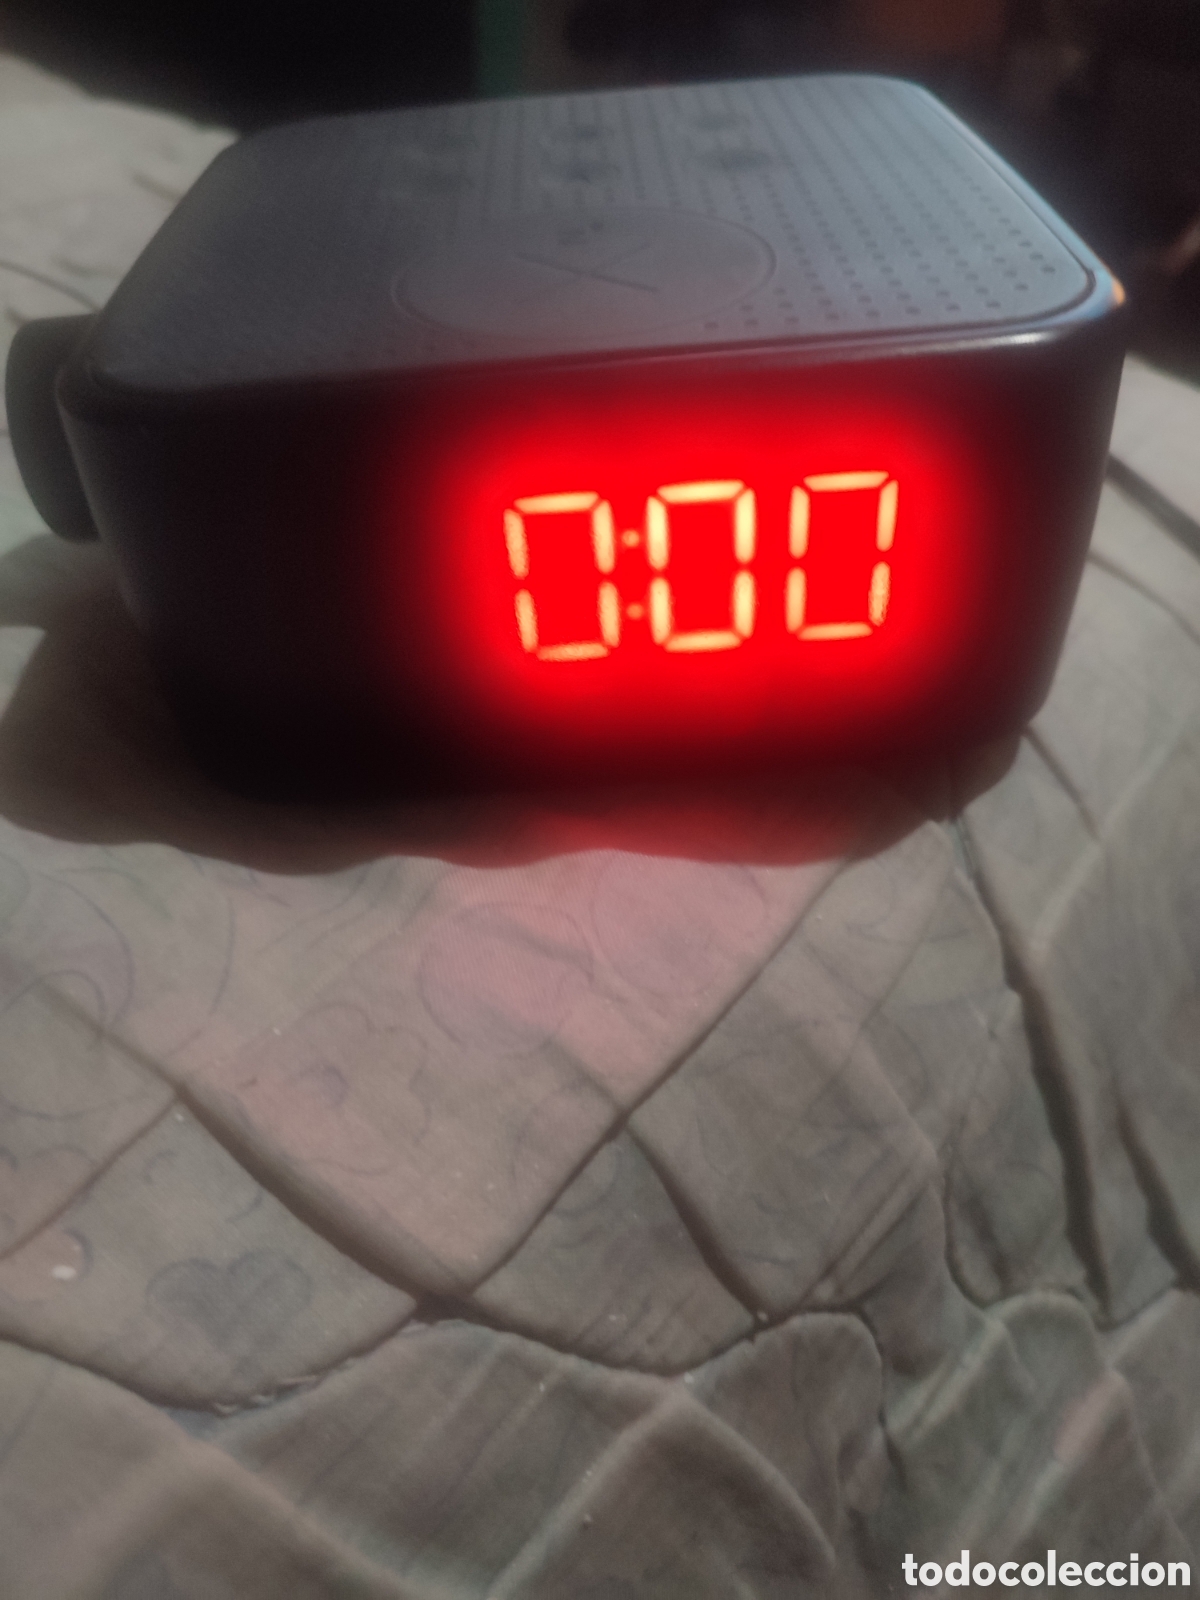 radio despertador digital con proyector silverc - Compra venta en  todocoleccion